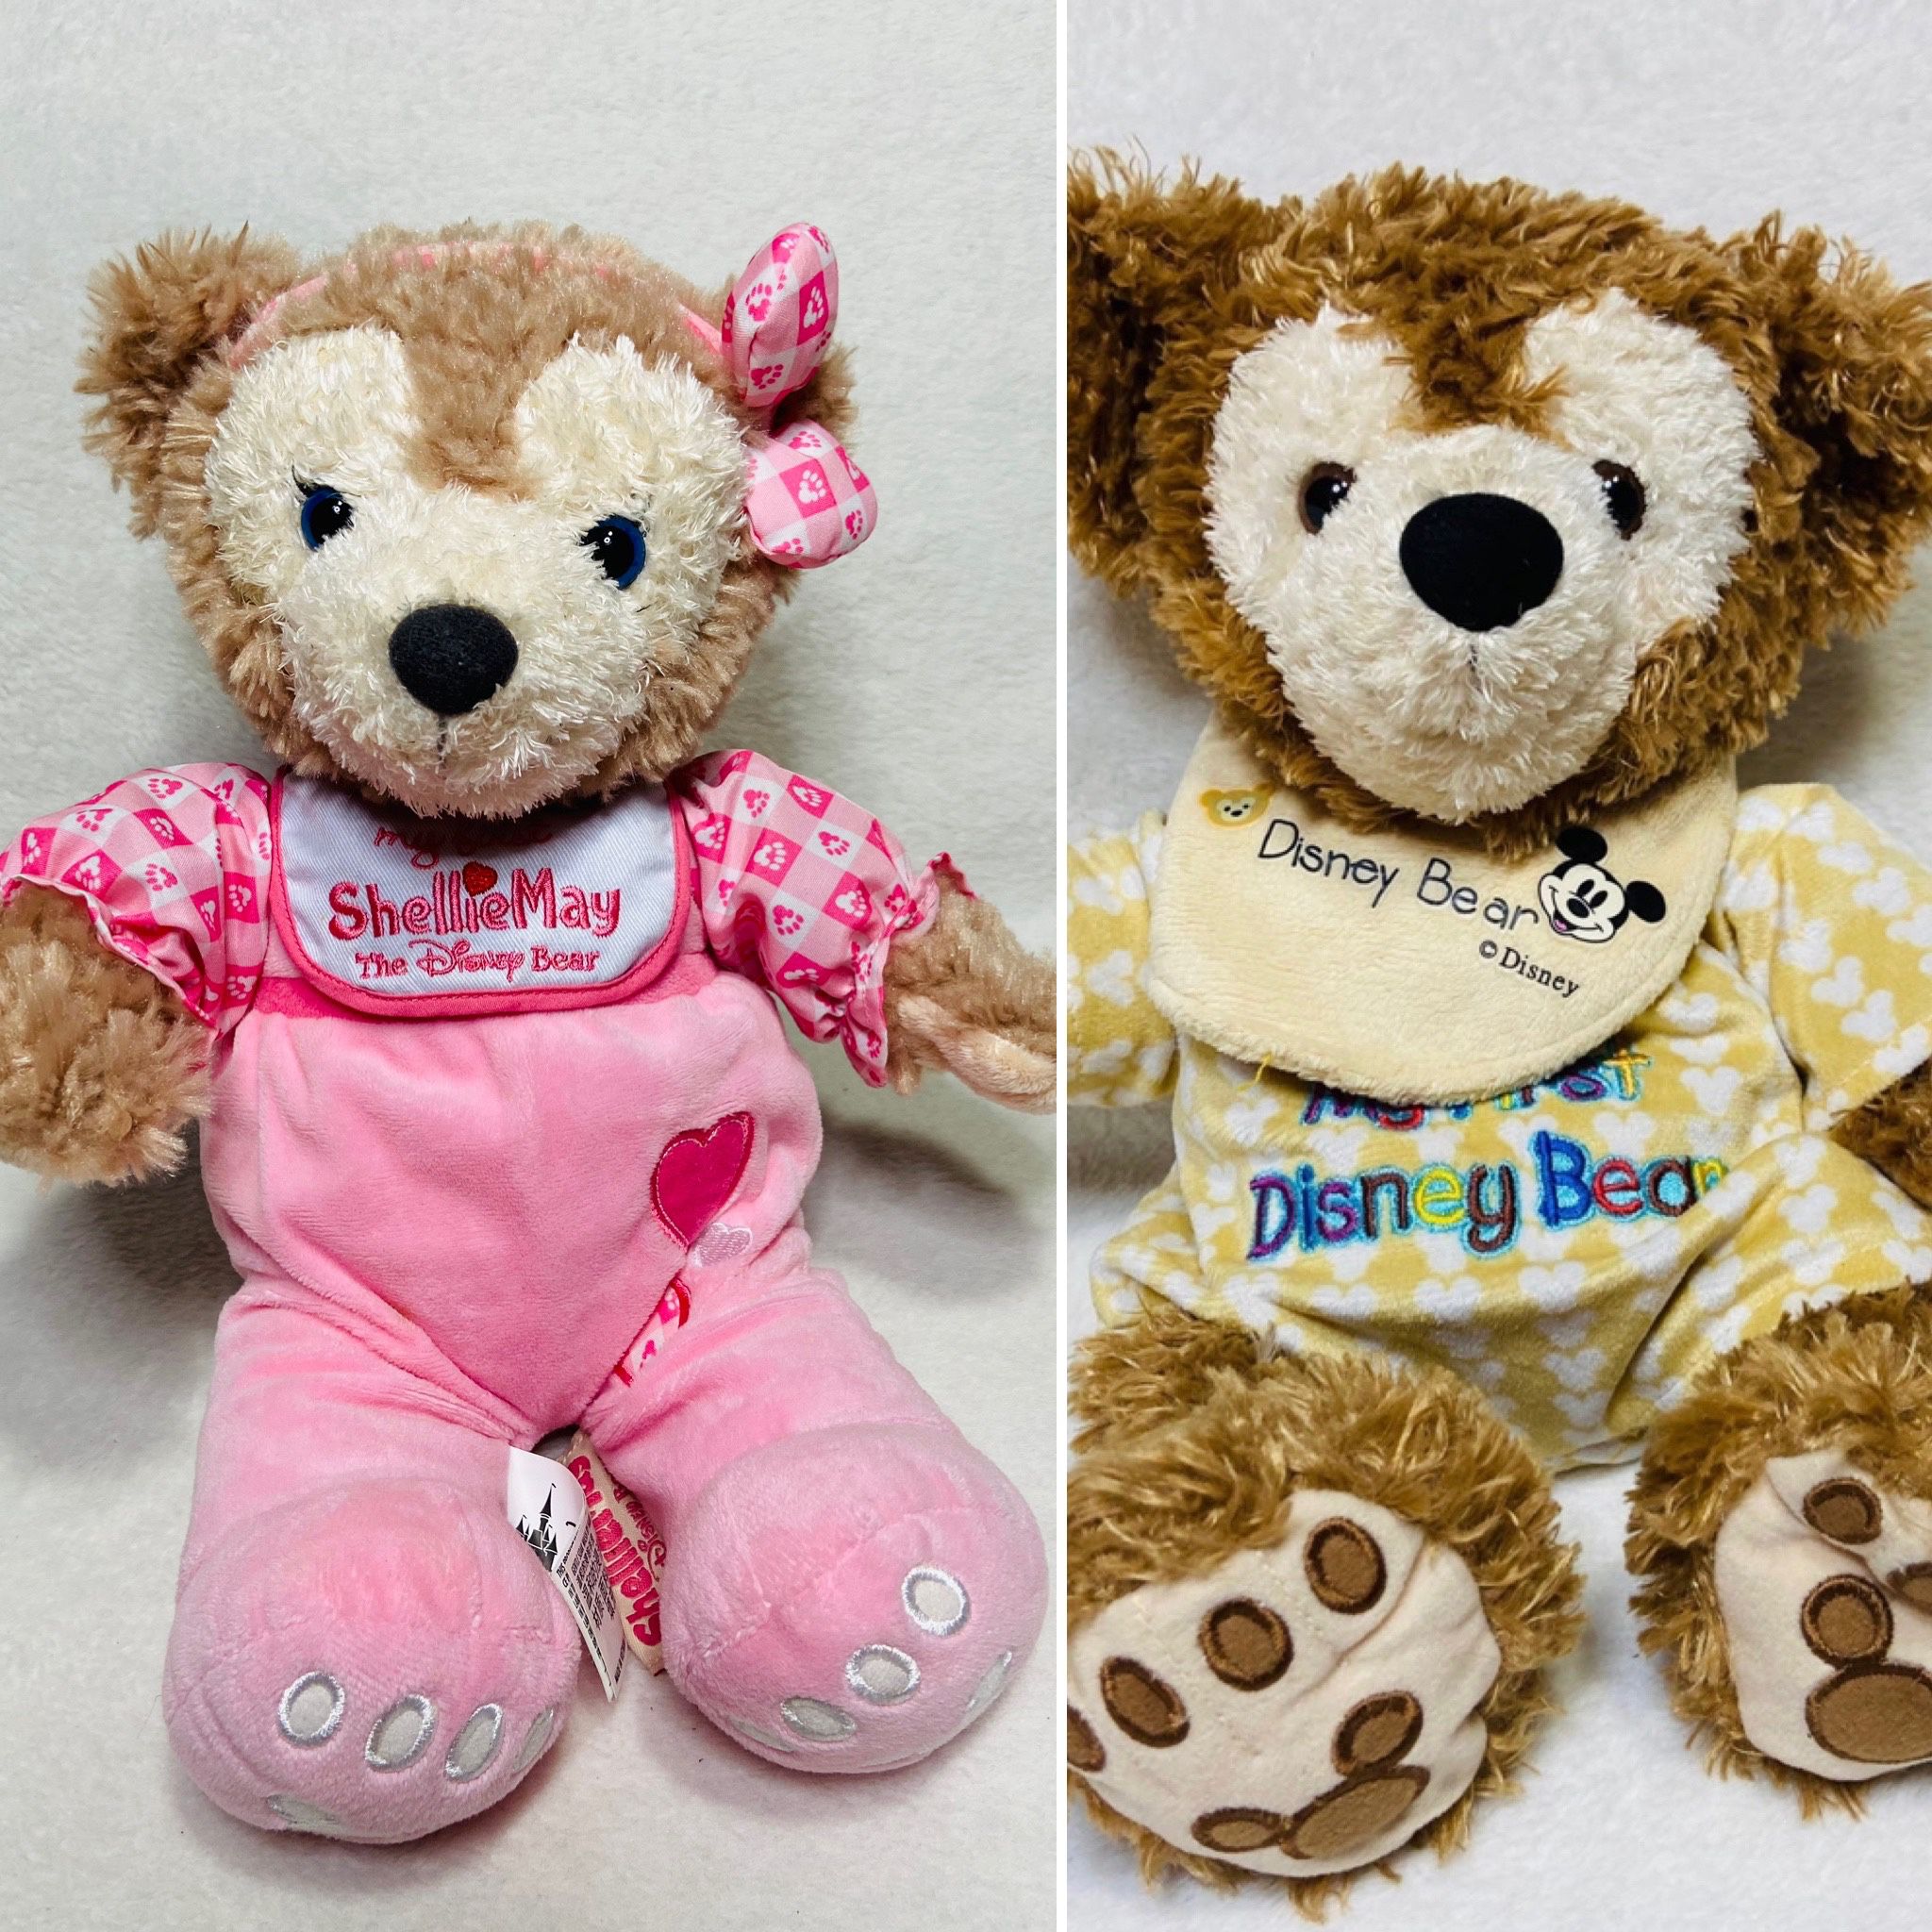 Disney Duffy Bear Shellie May First Teddy Bears